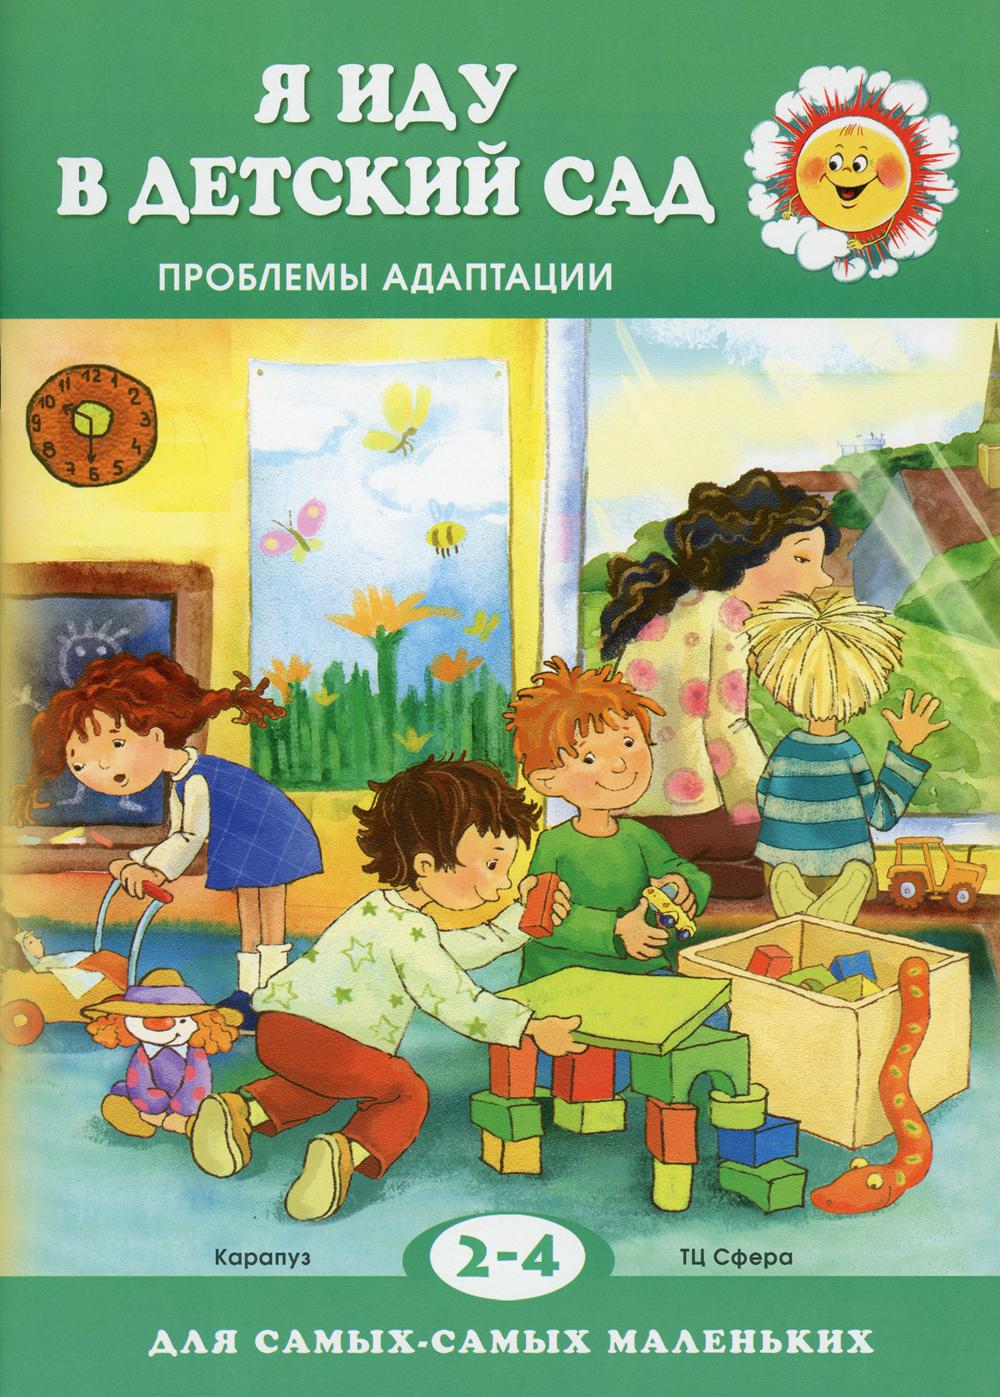 Детский сад книги купить. Книга для детского сада. Книжка для детского сада. Книжка про садик для малышей. Книги про садик для детей.